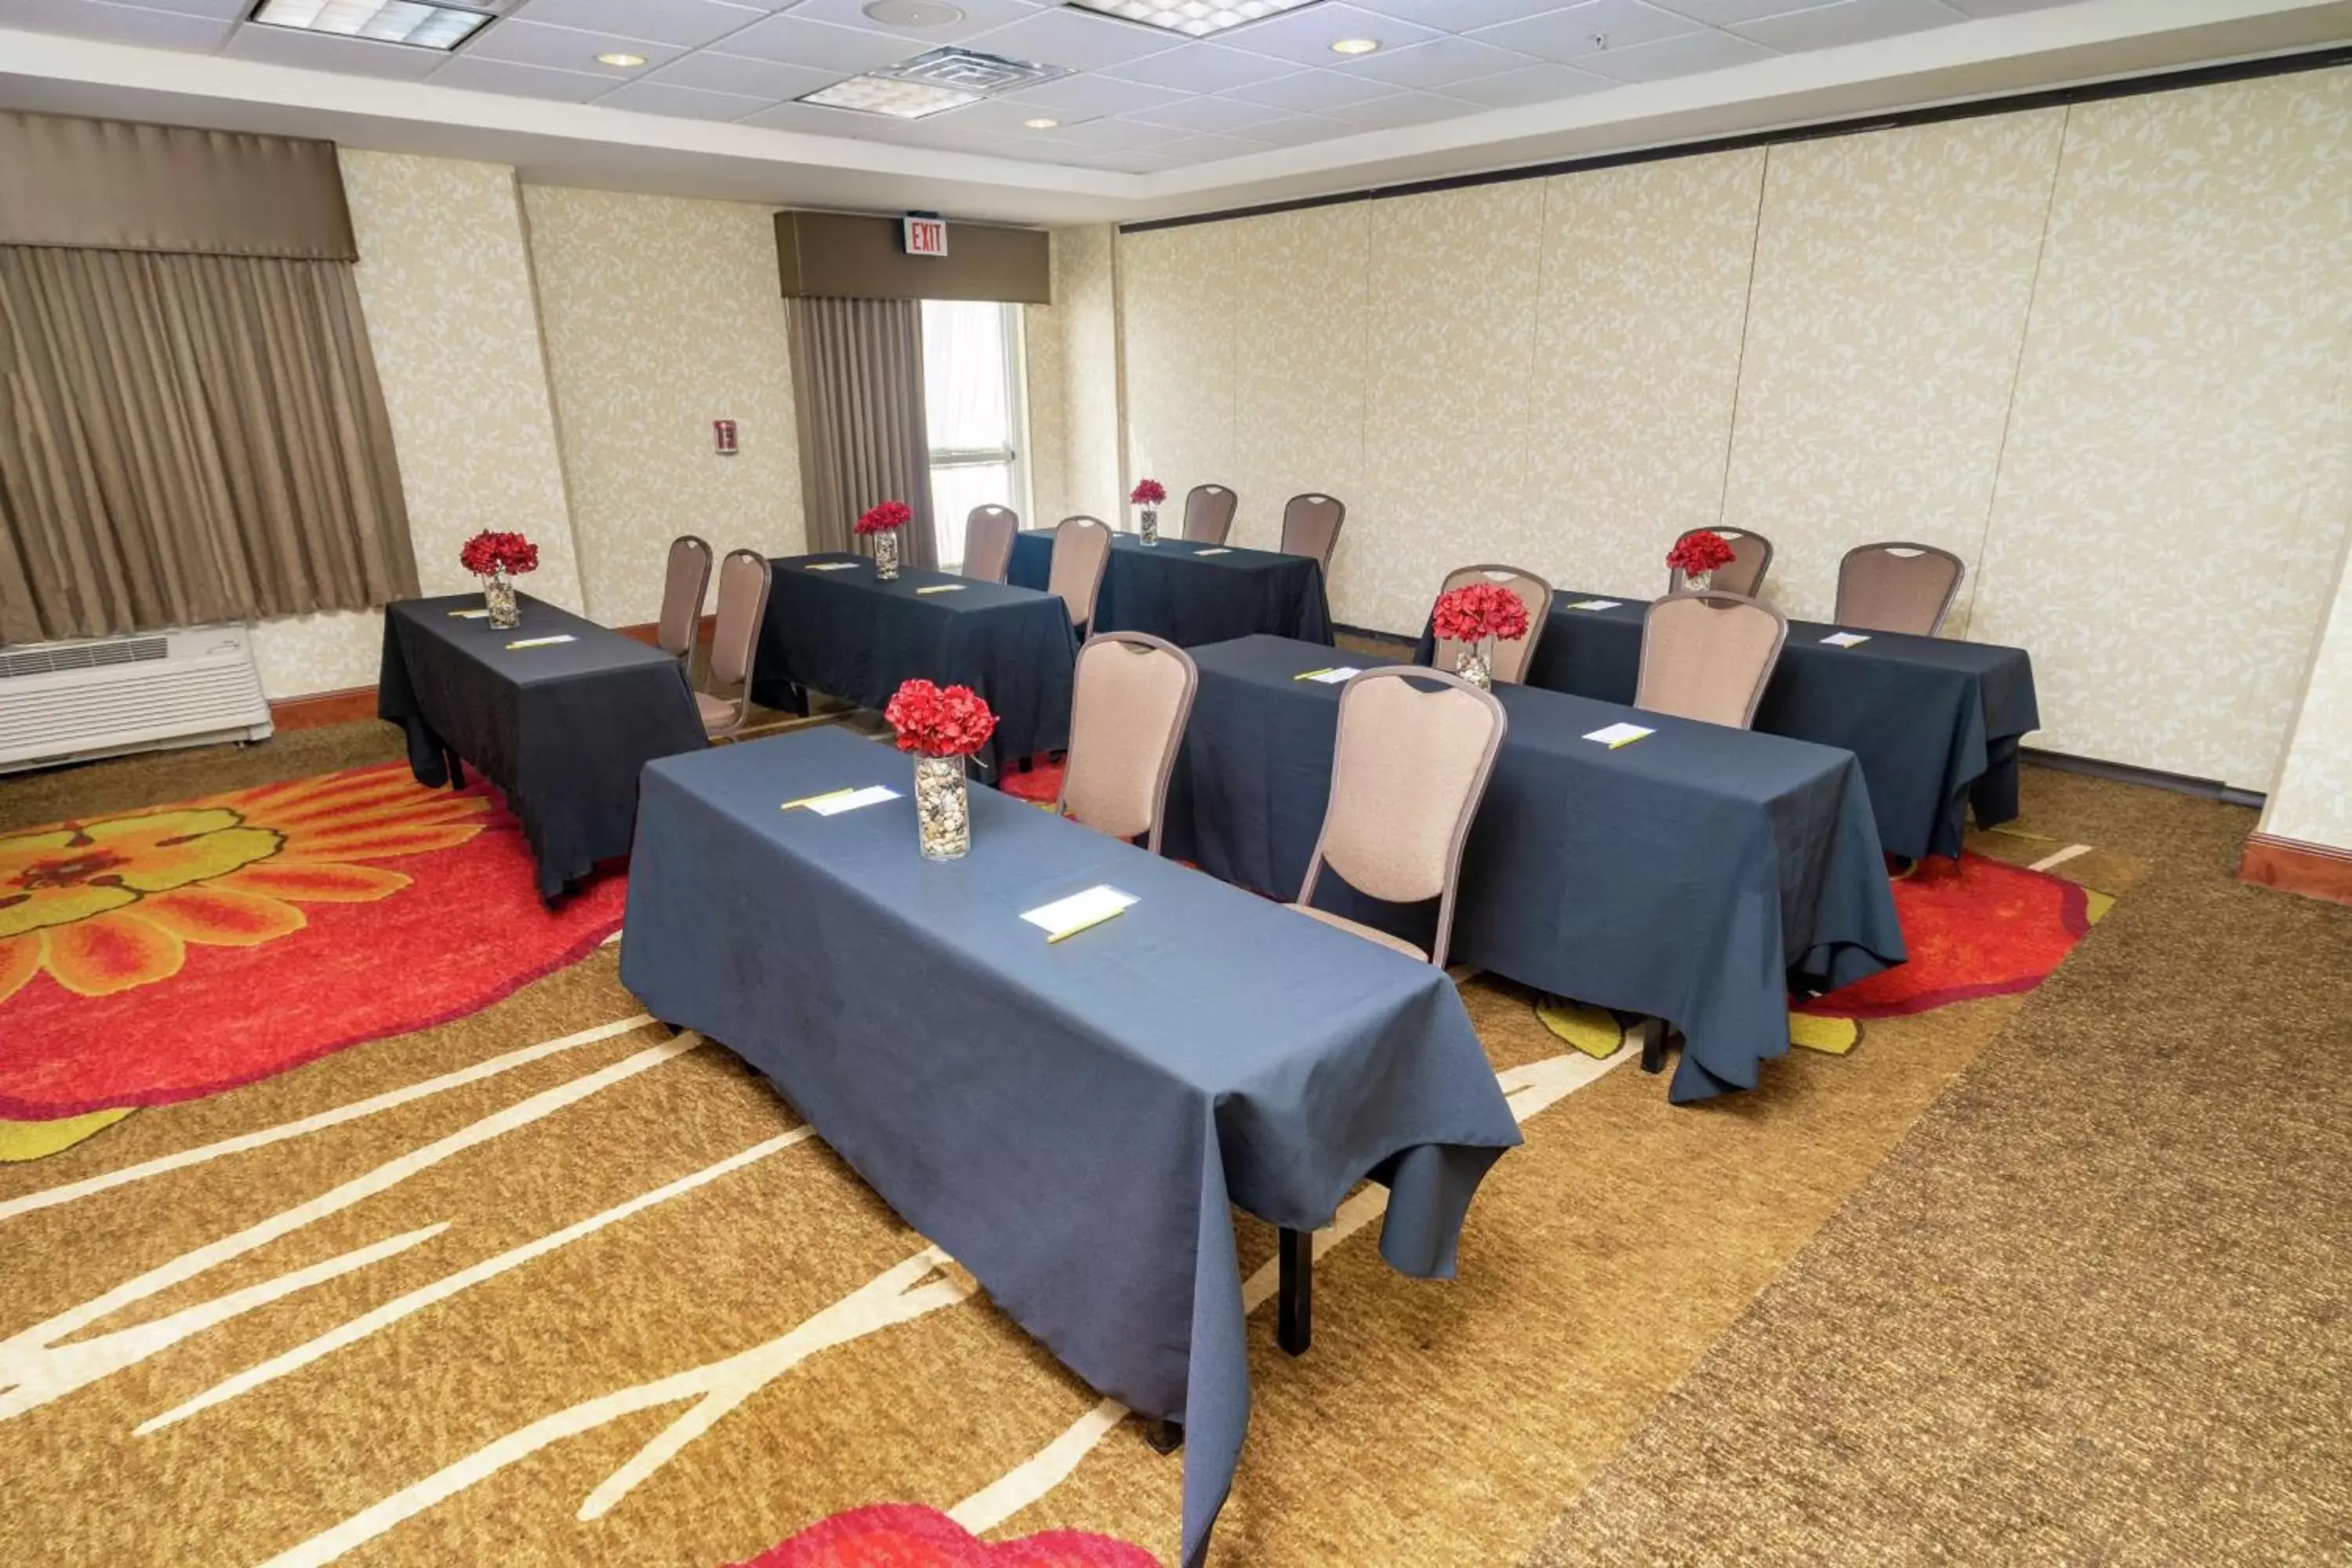 Meeting/conference room in Hilton Garden Inn Ontario Rancho Cucamonga